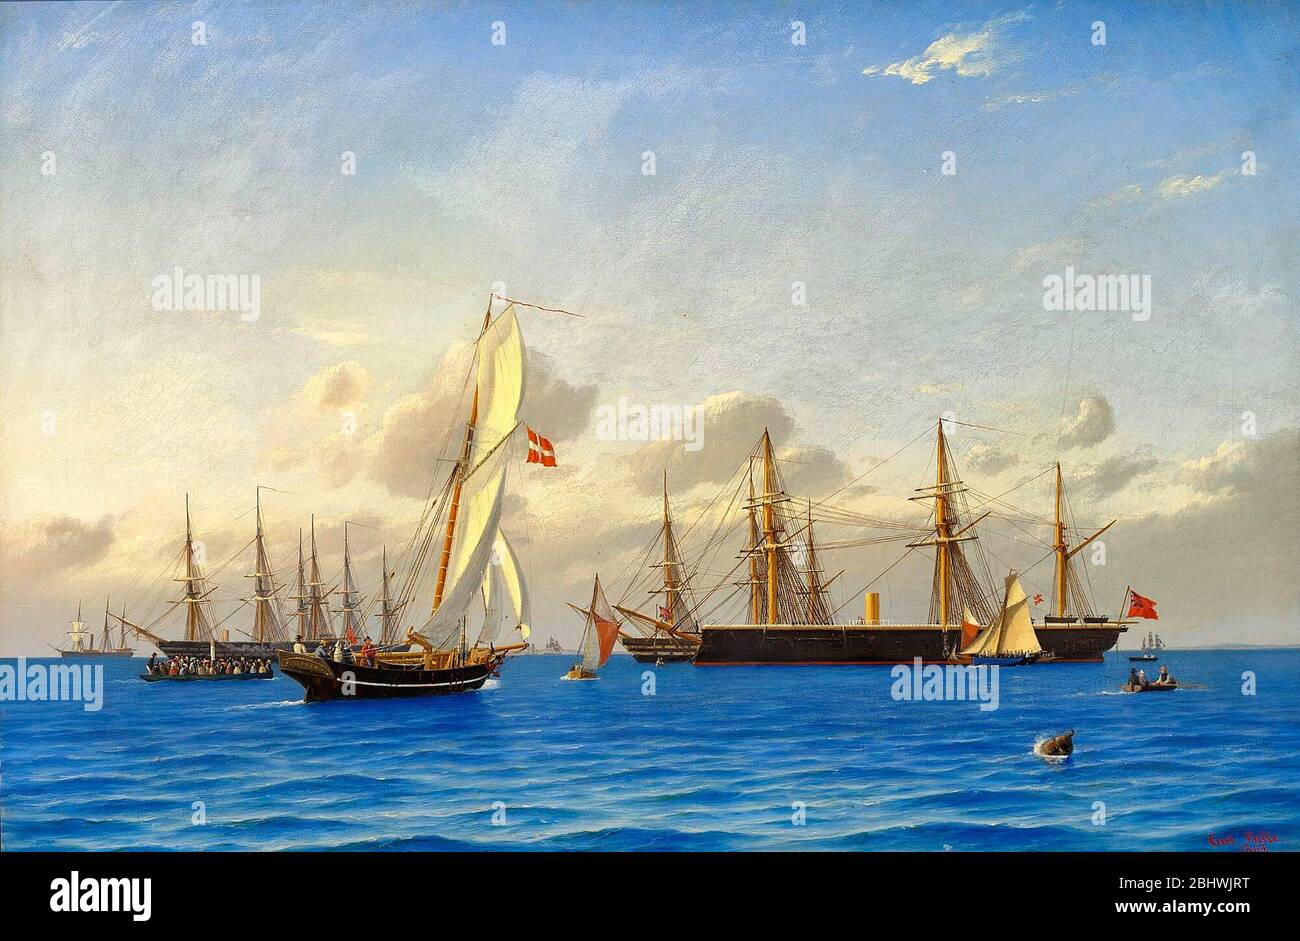 Die Kanalflotte in Kopenhagen 1862 - Carl Bille, 1863 - das schwarze Schiff in der Mitte ist HMS Defense und andere große Schiffe, darunter das Flaggschiff HMS Revenge und HMS Trafalgar. Der dänische König Frederik VII. Besuchte die Schiffe am 30. August 1862 Stockfoto